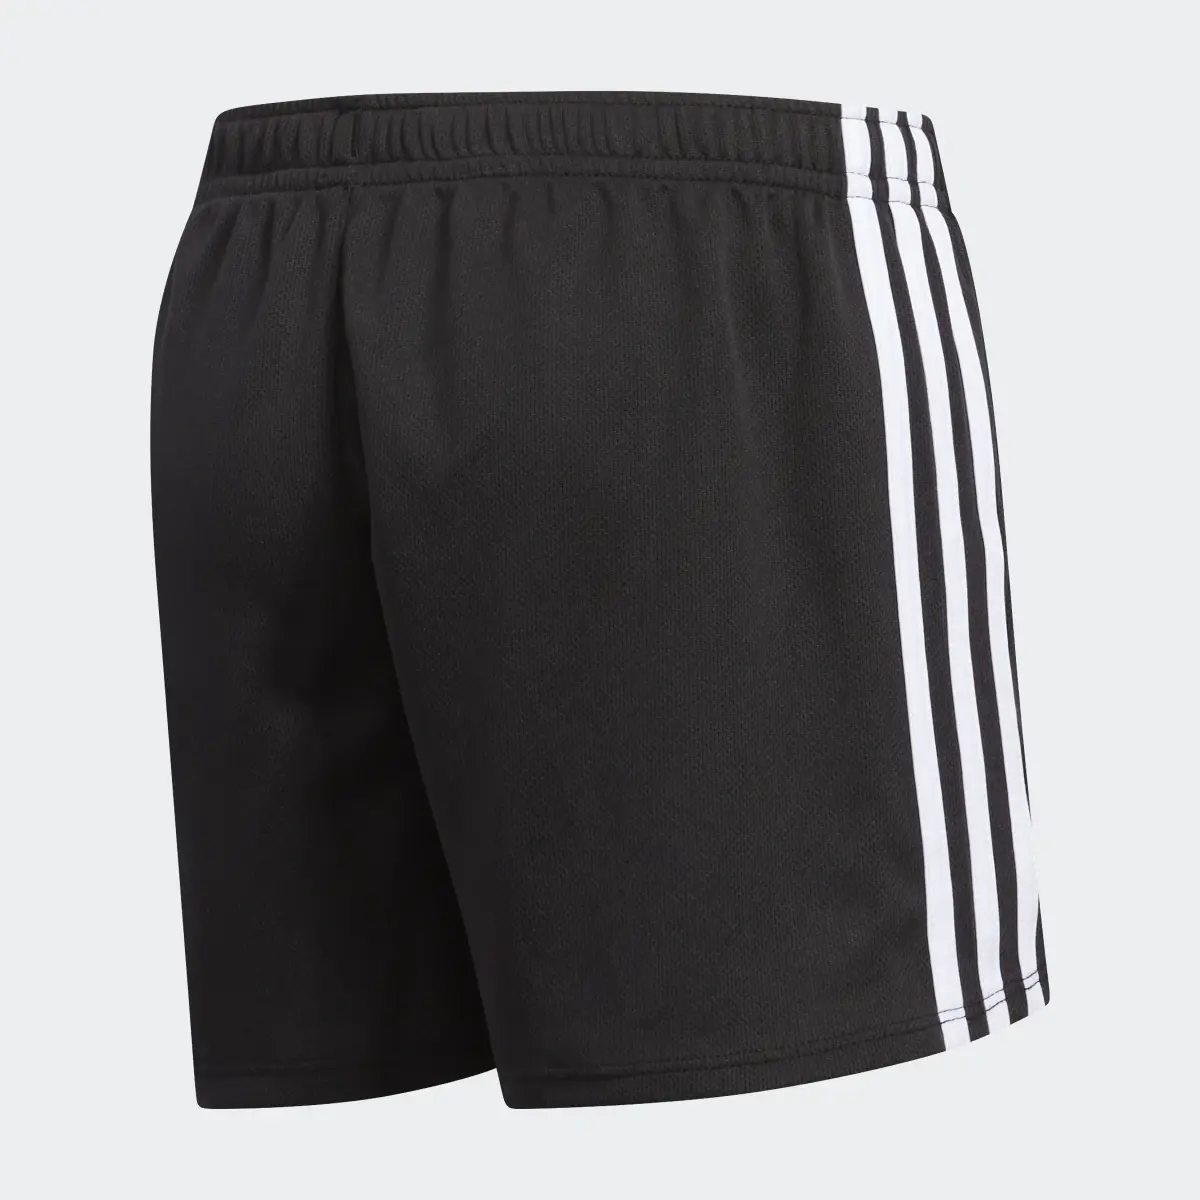 Adidas 3-Stripes Mesh Shorts. 2